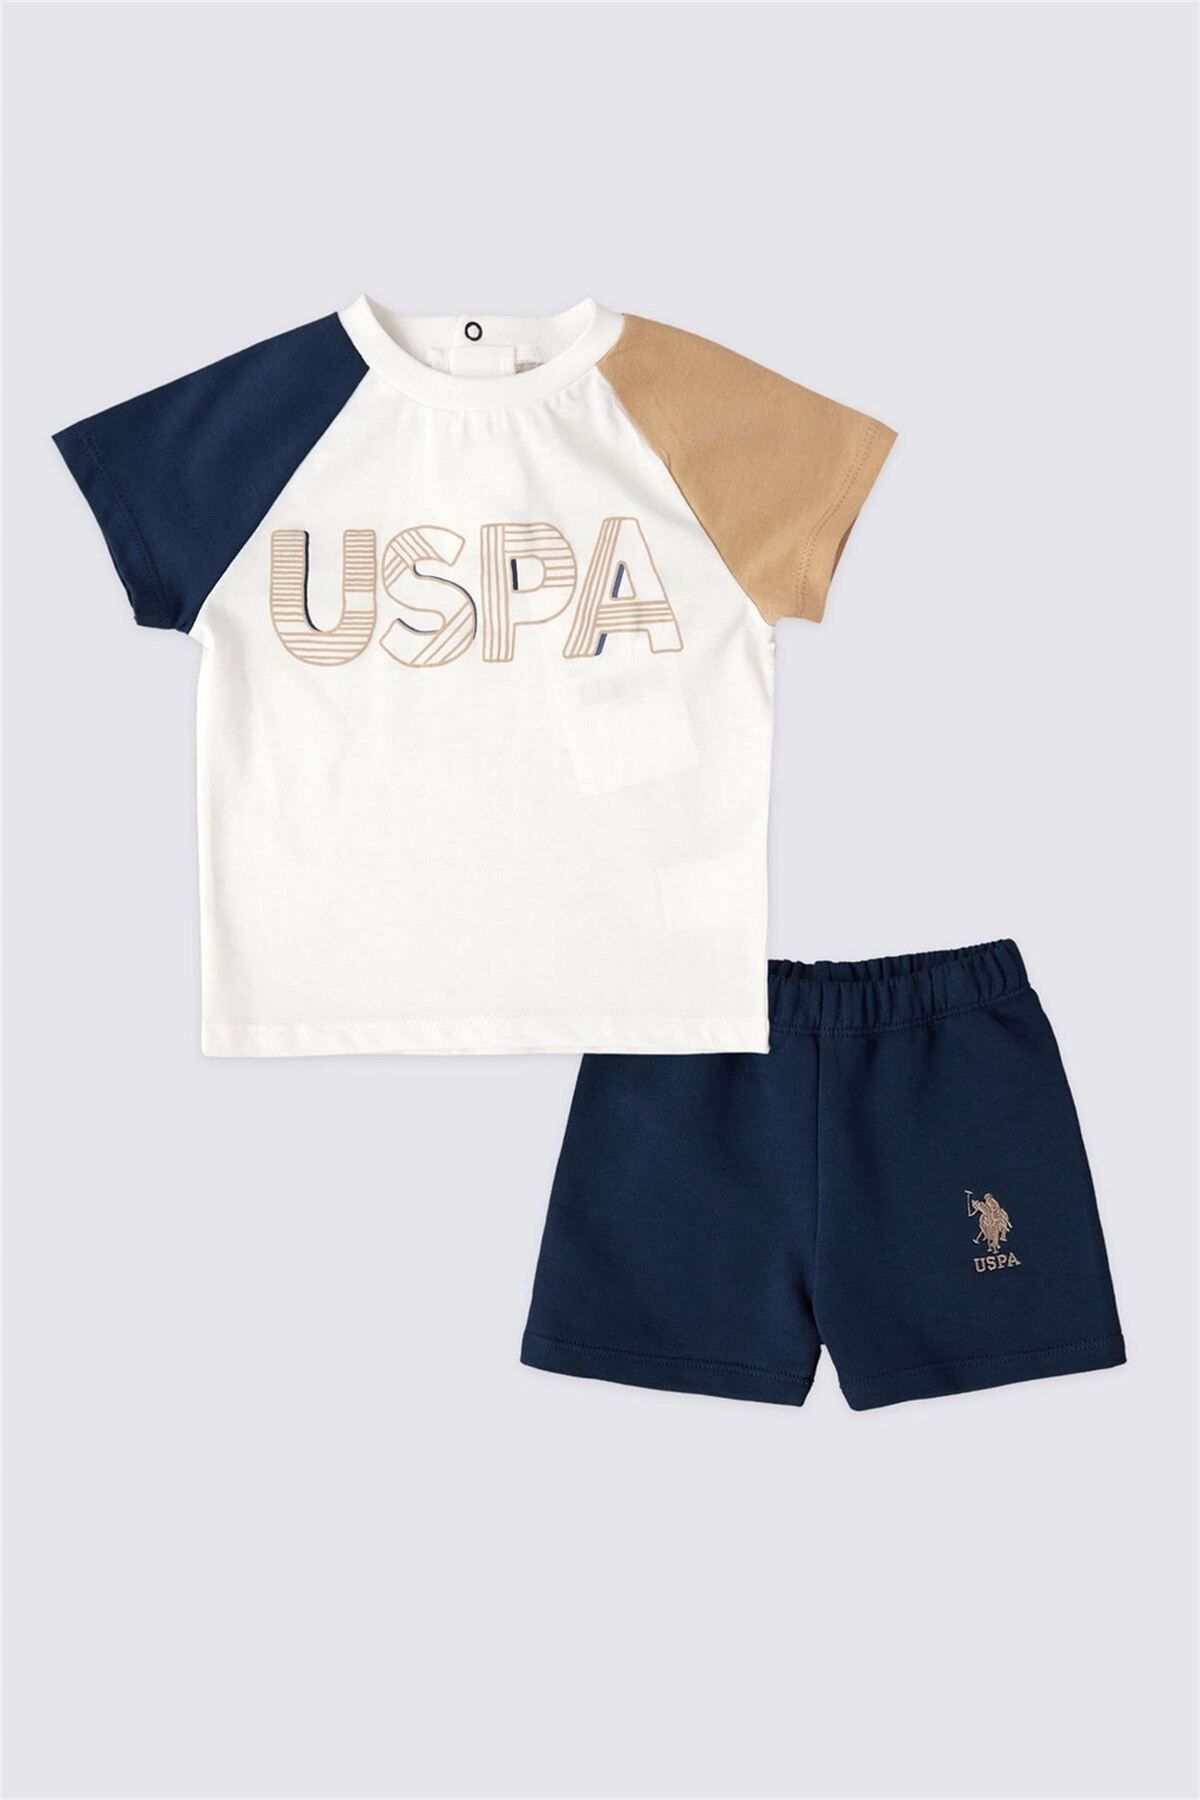 U.S. Polo Assn. Erkek Bebek 2'li Kısa Kol Tişört Takımı Krem/Lacivert